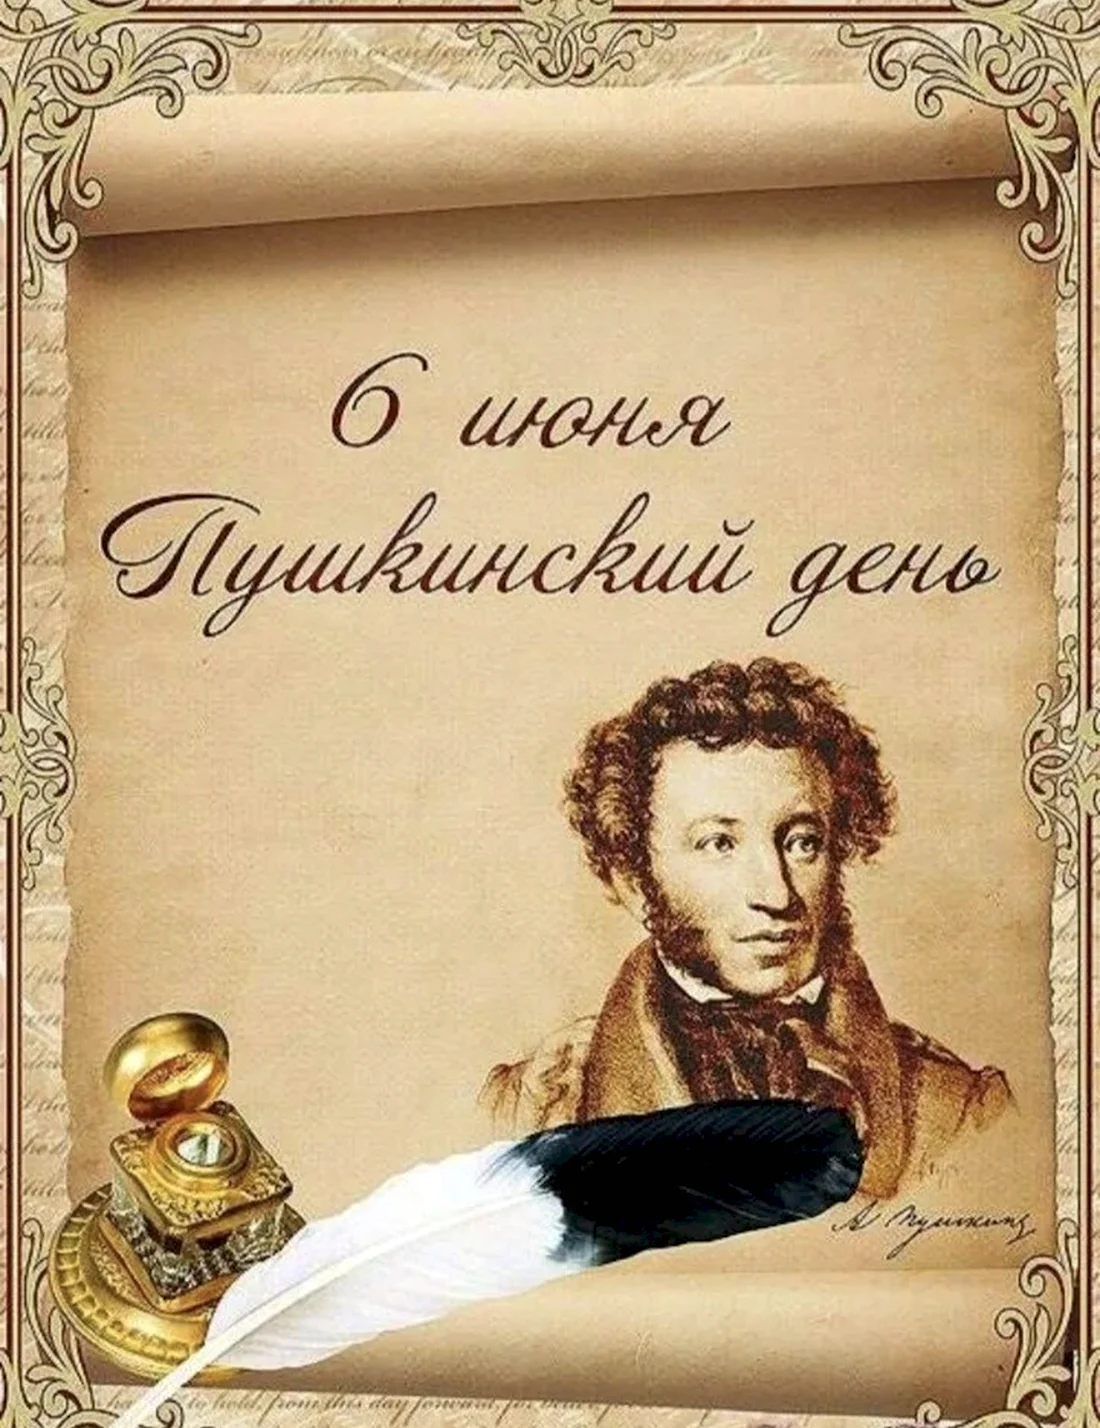 Пушкин 6 июня Пушкинский день